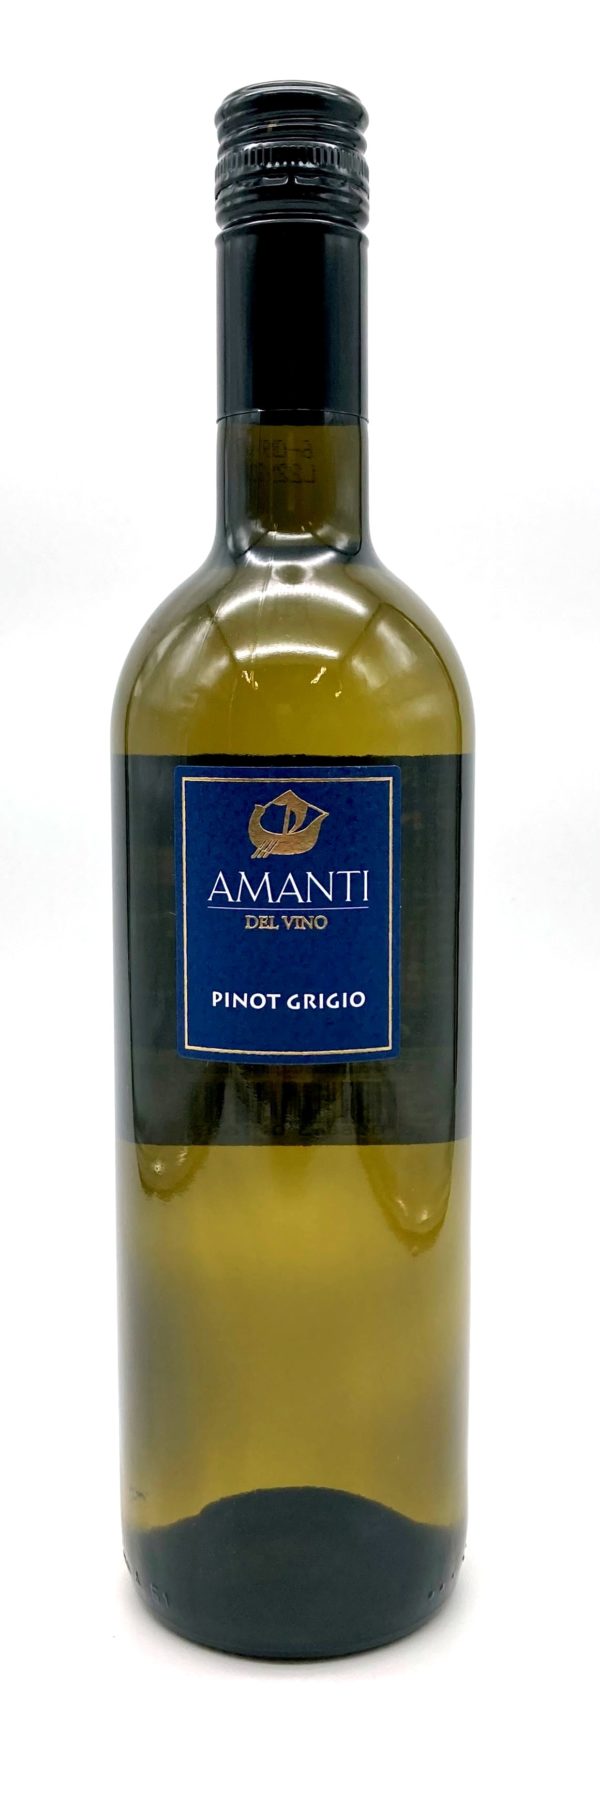 Pinot Grigio Amanti. Edinburgh, Scotland